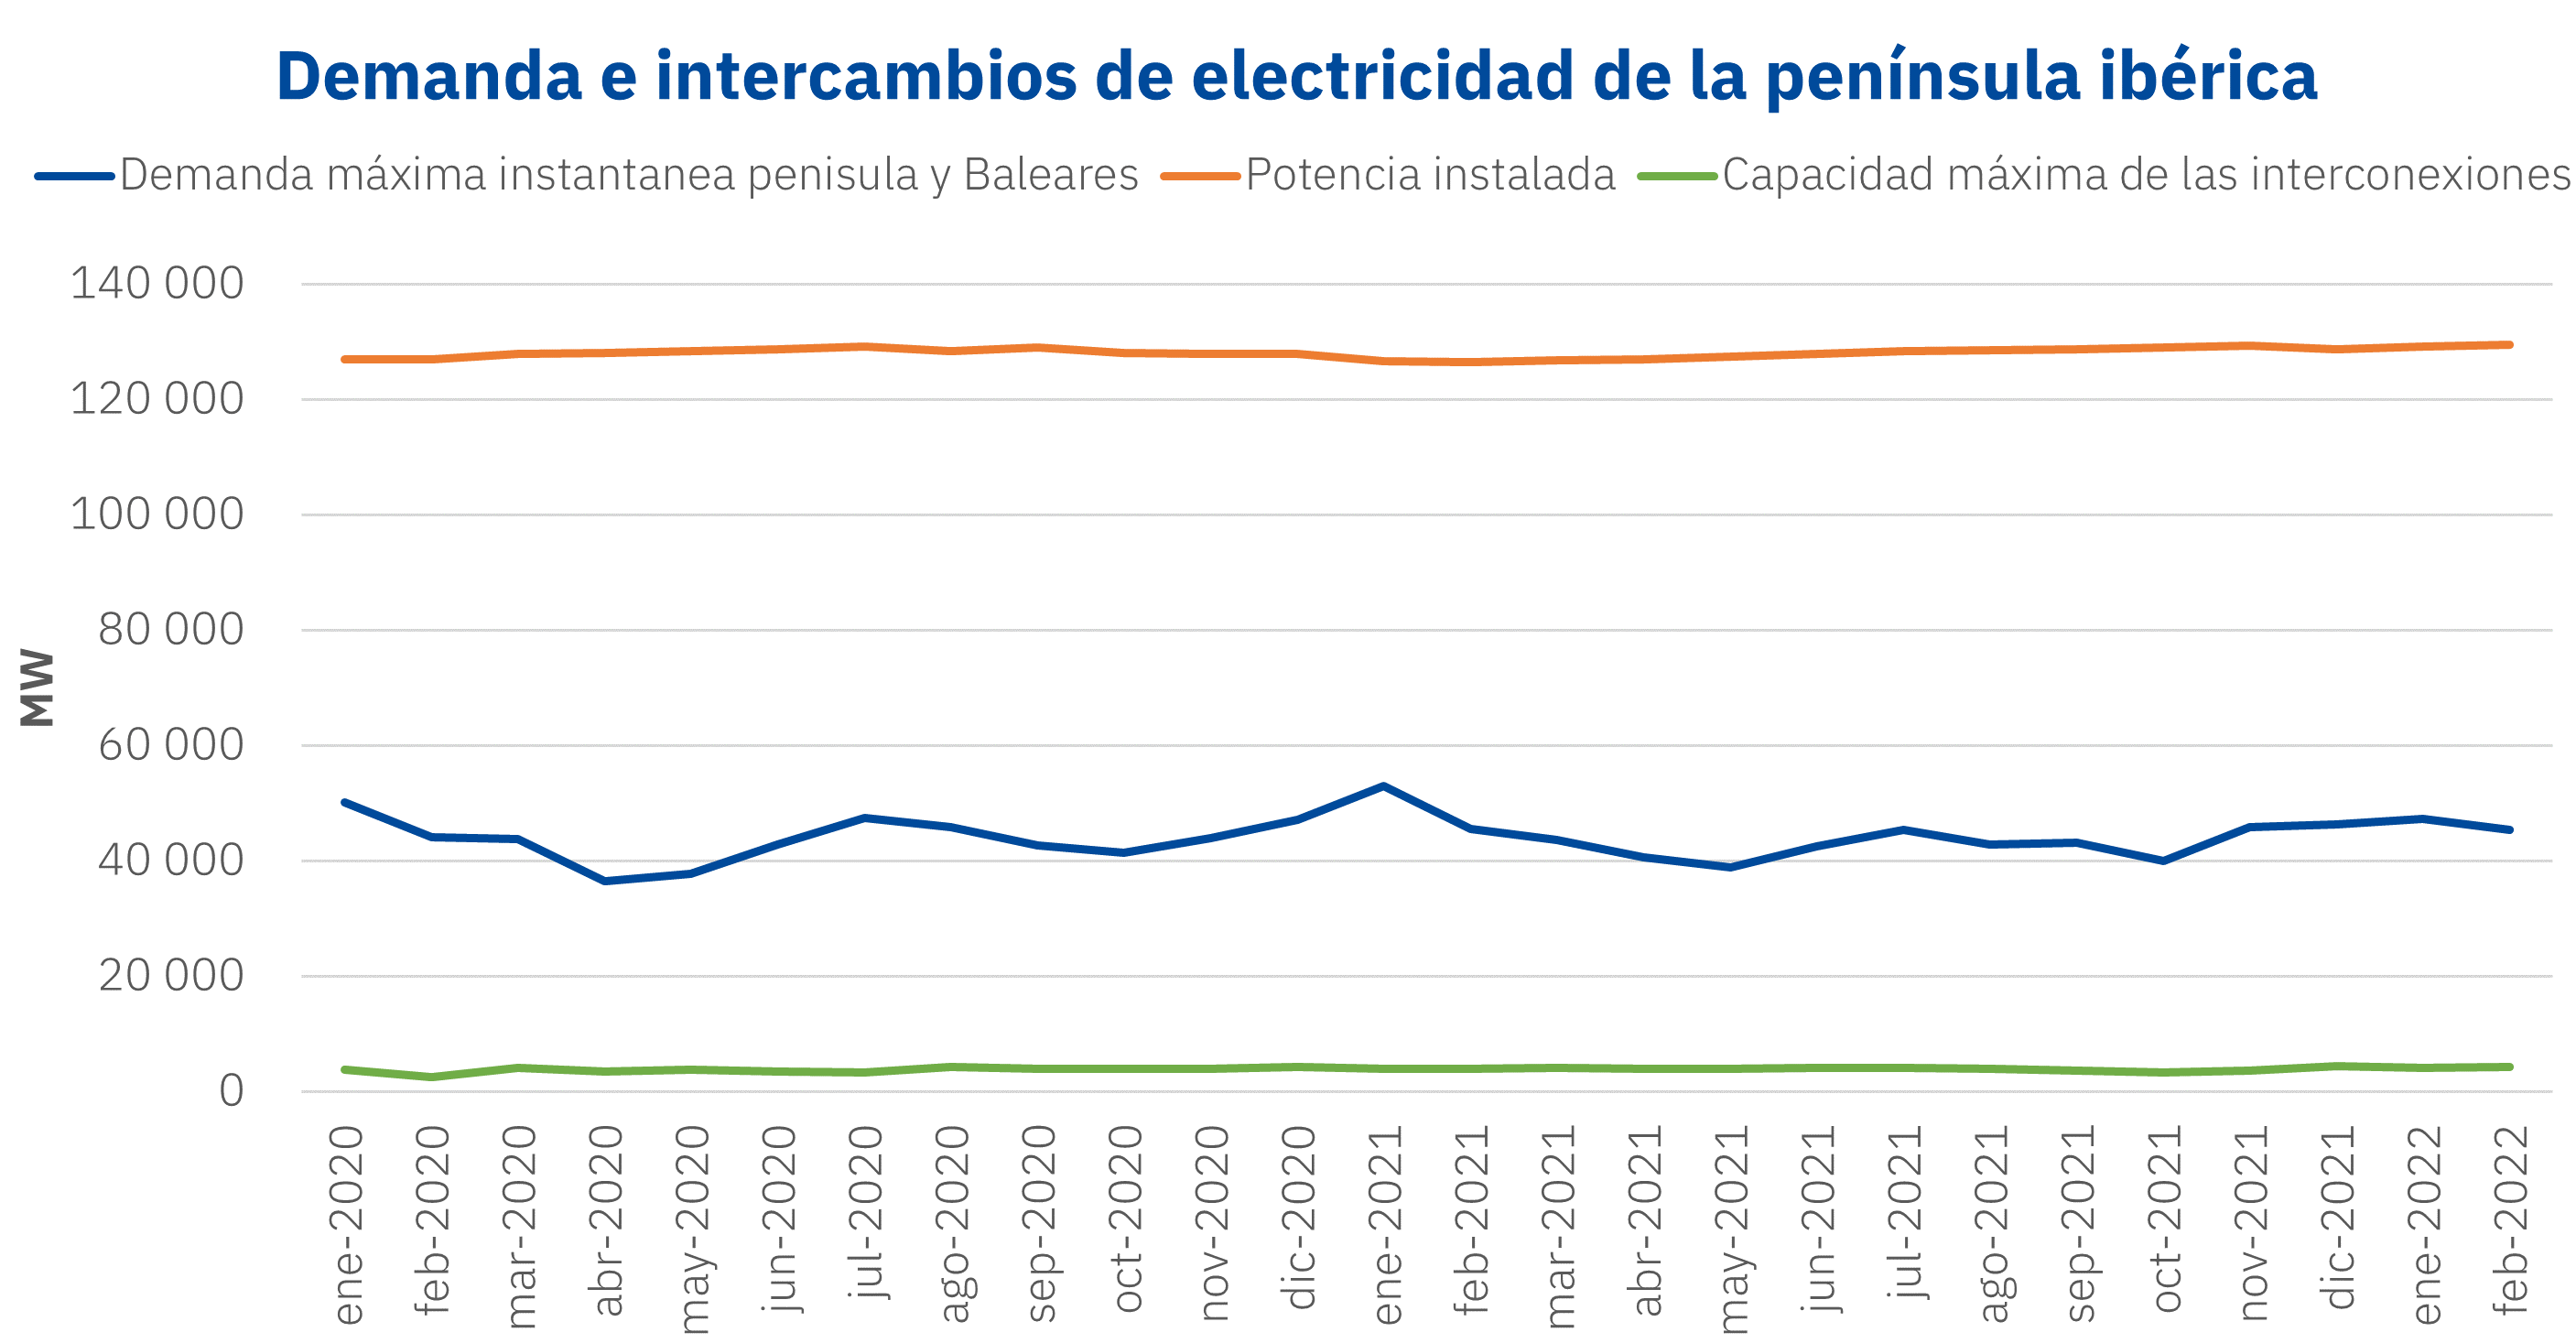 AleaSoft - Demanda pico capacidad inteconexion electricidad peninsula iberica